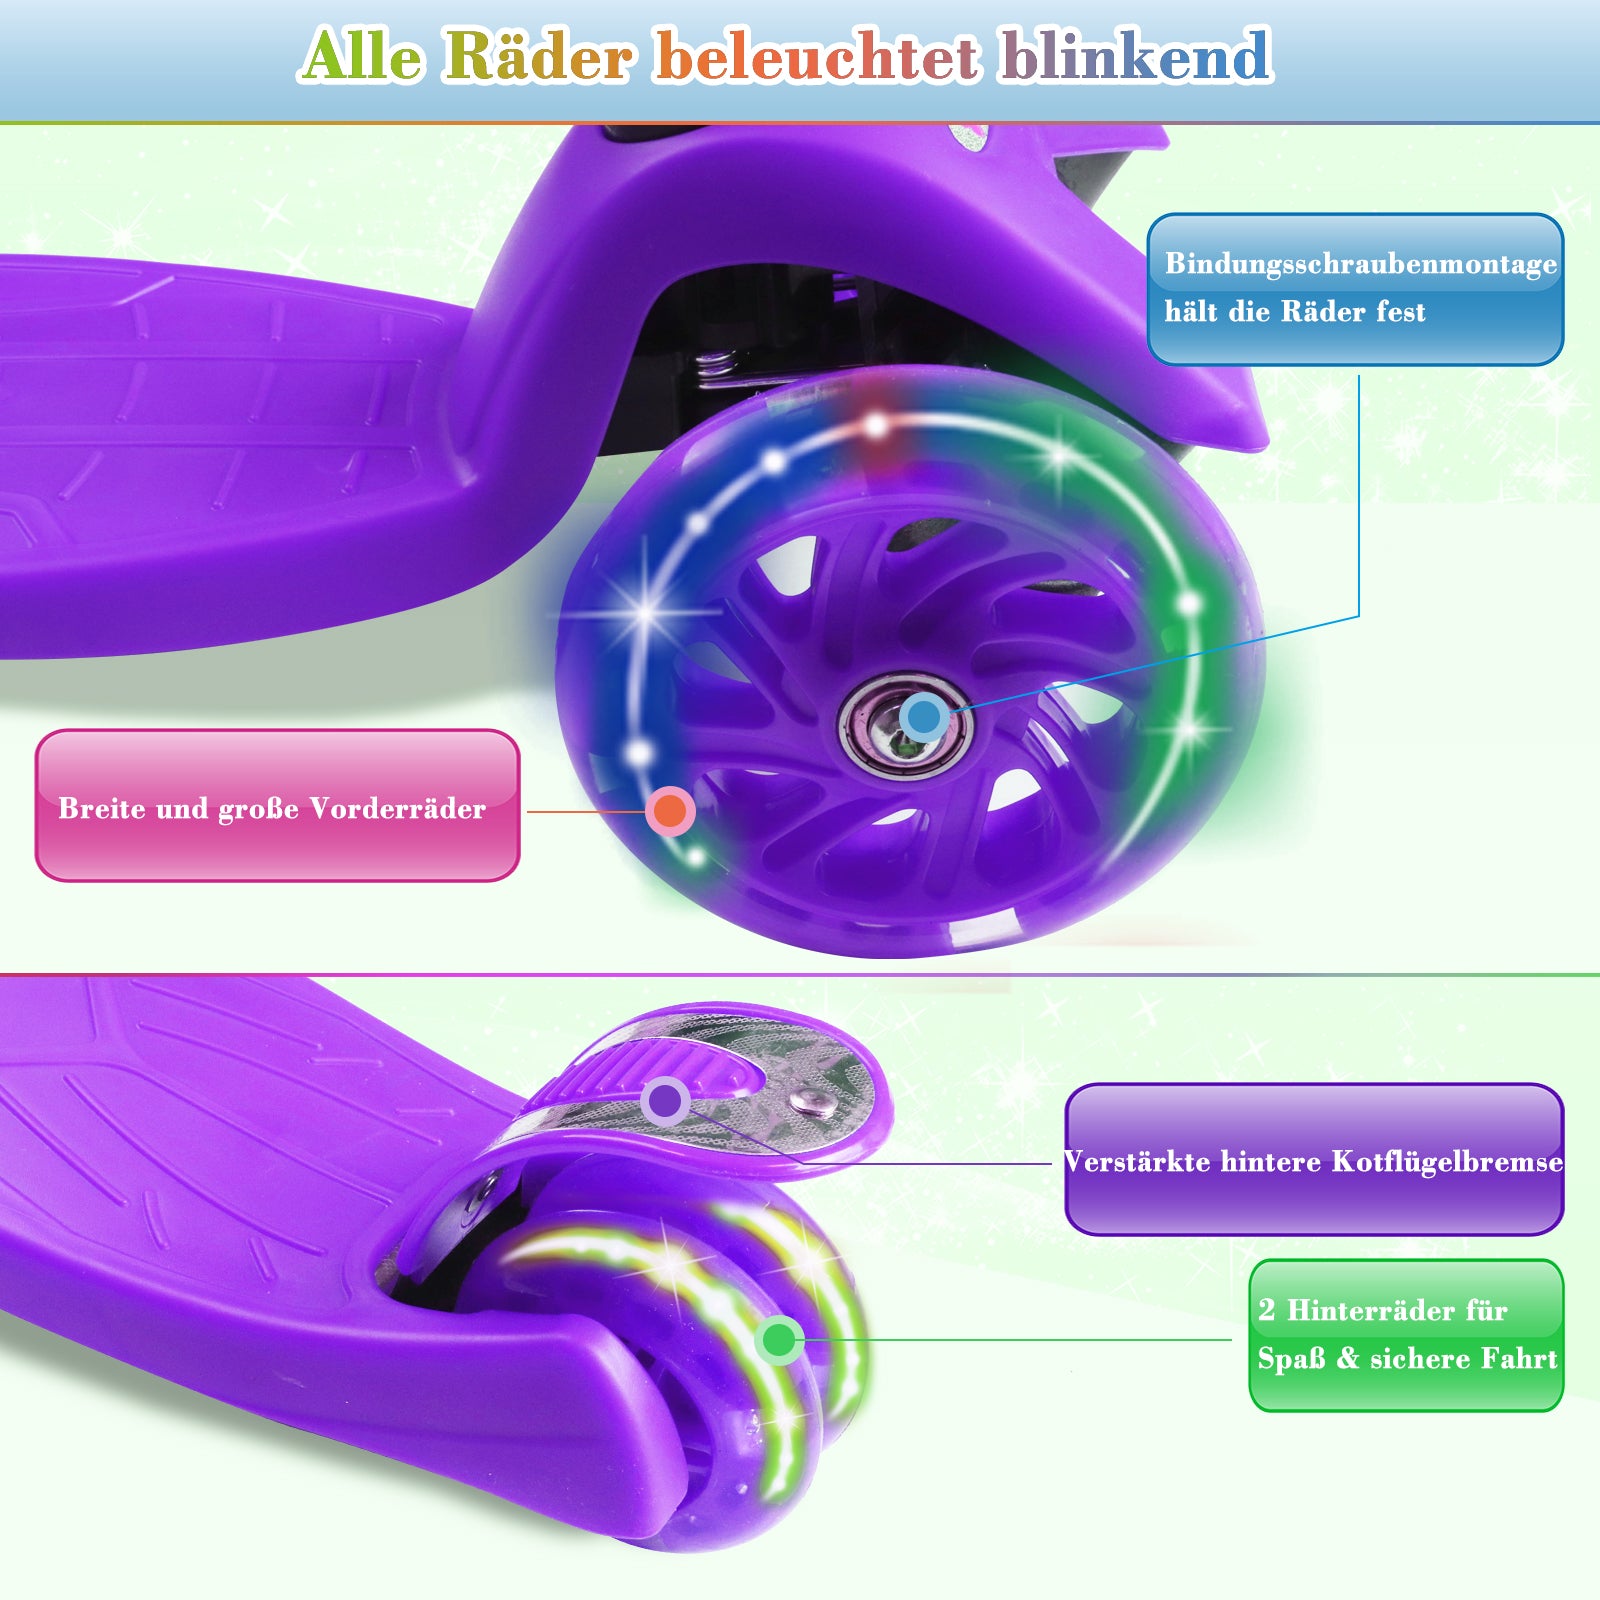 Kinder-Roller Mit 3 Blinkenden Led-LeuchträDern Lila – K400